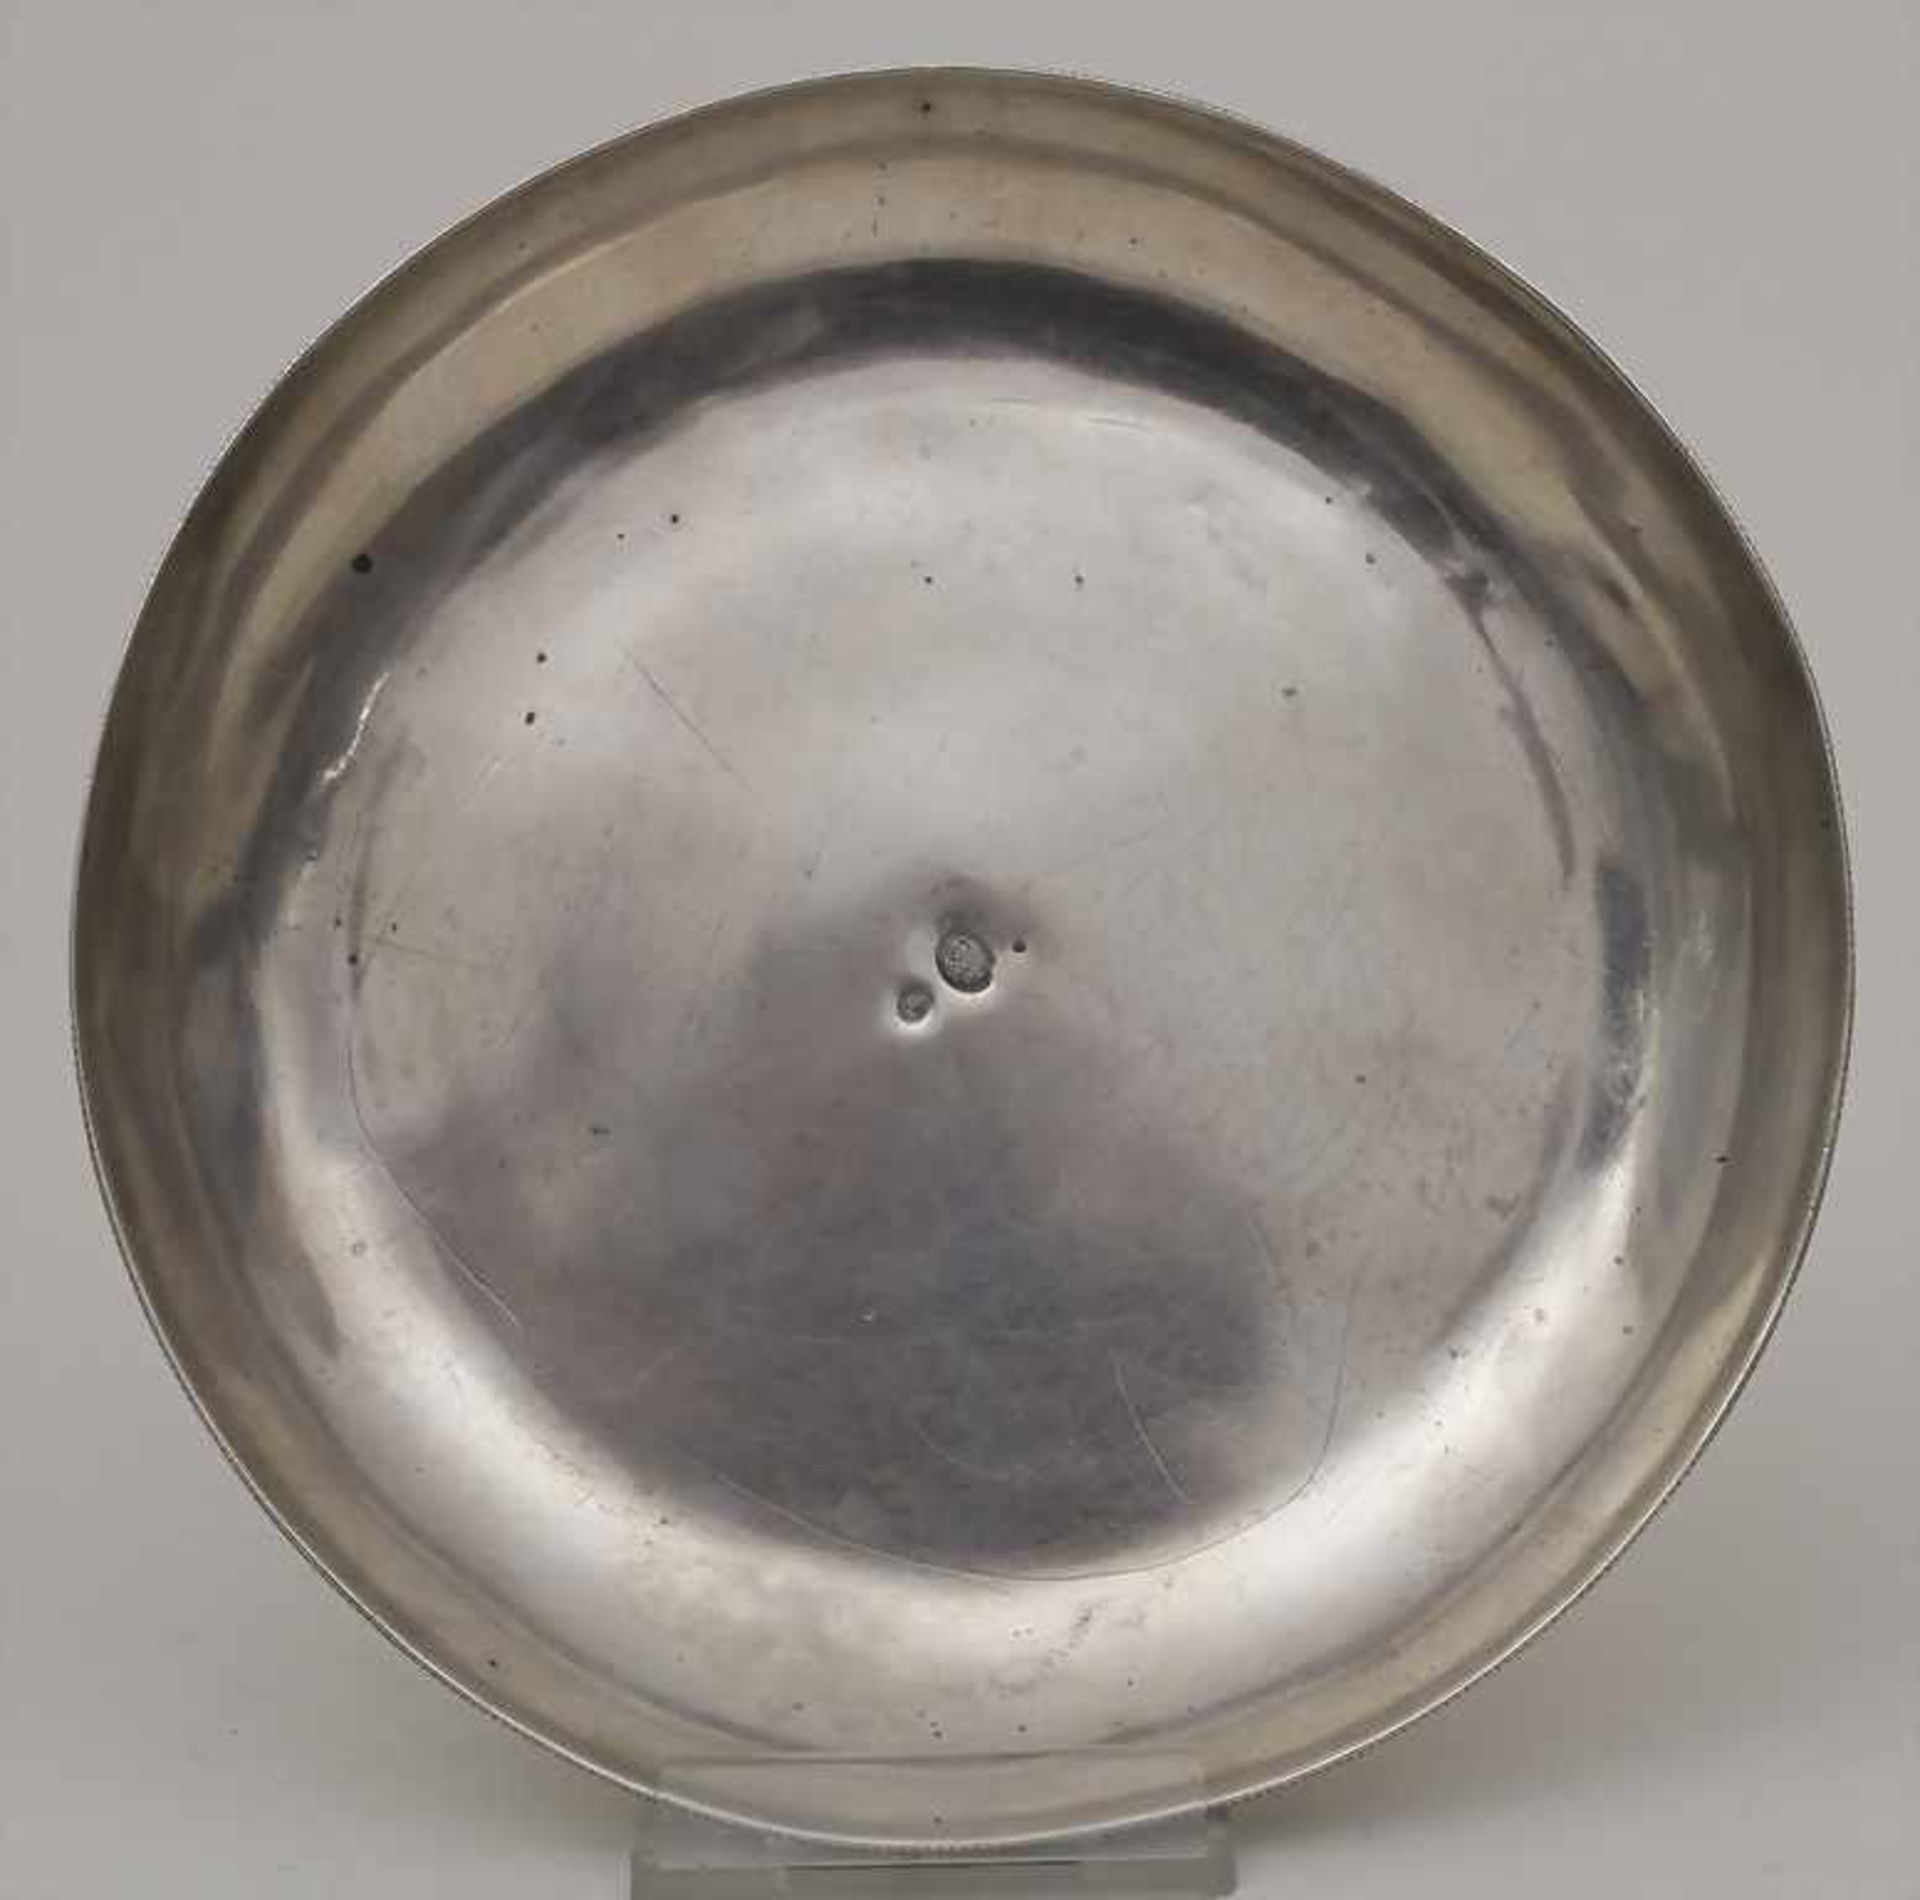 Runde Platte / A round platter, osmanisch / Ottoman, 19. Jh.Material: Silber 800, Tughra/Tugrat,